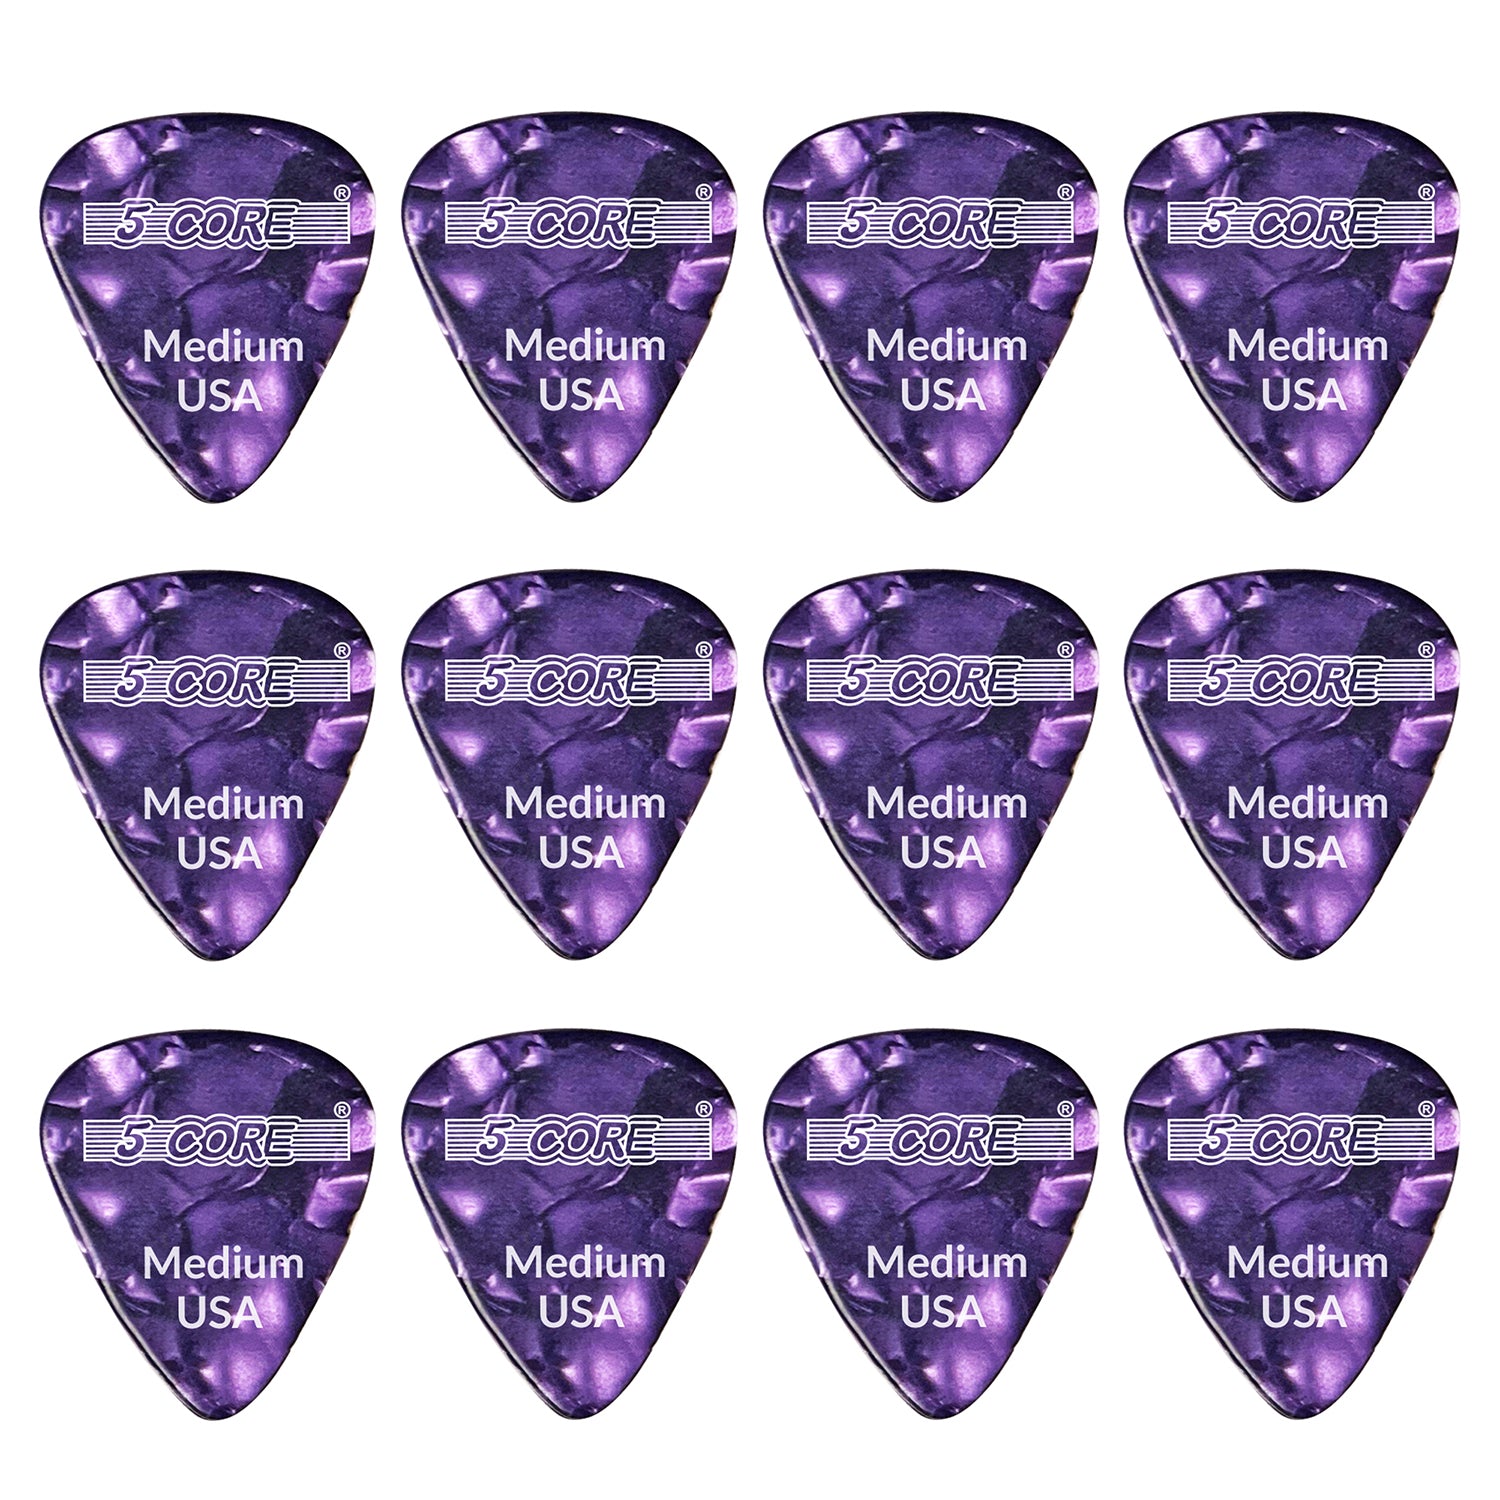 5 Core Celluloid Guitar Pick 12Pack Purple Medium Gauge Plectrums for Acoustic Electric Bass Guitar